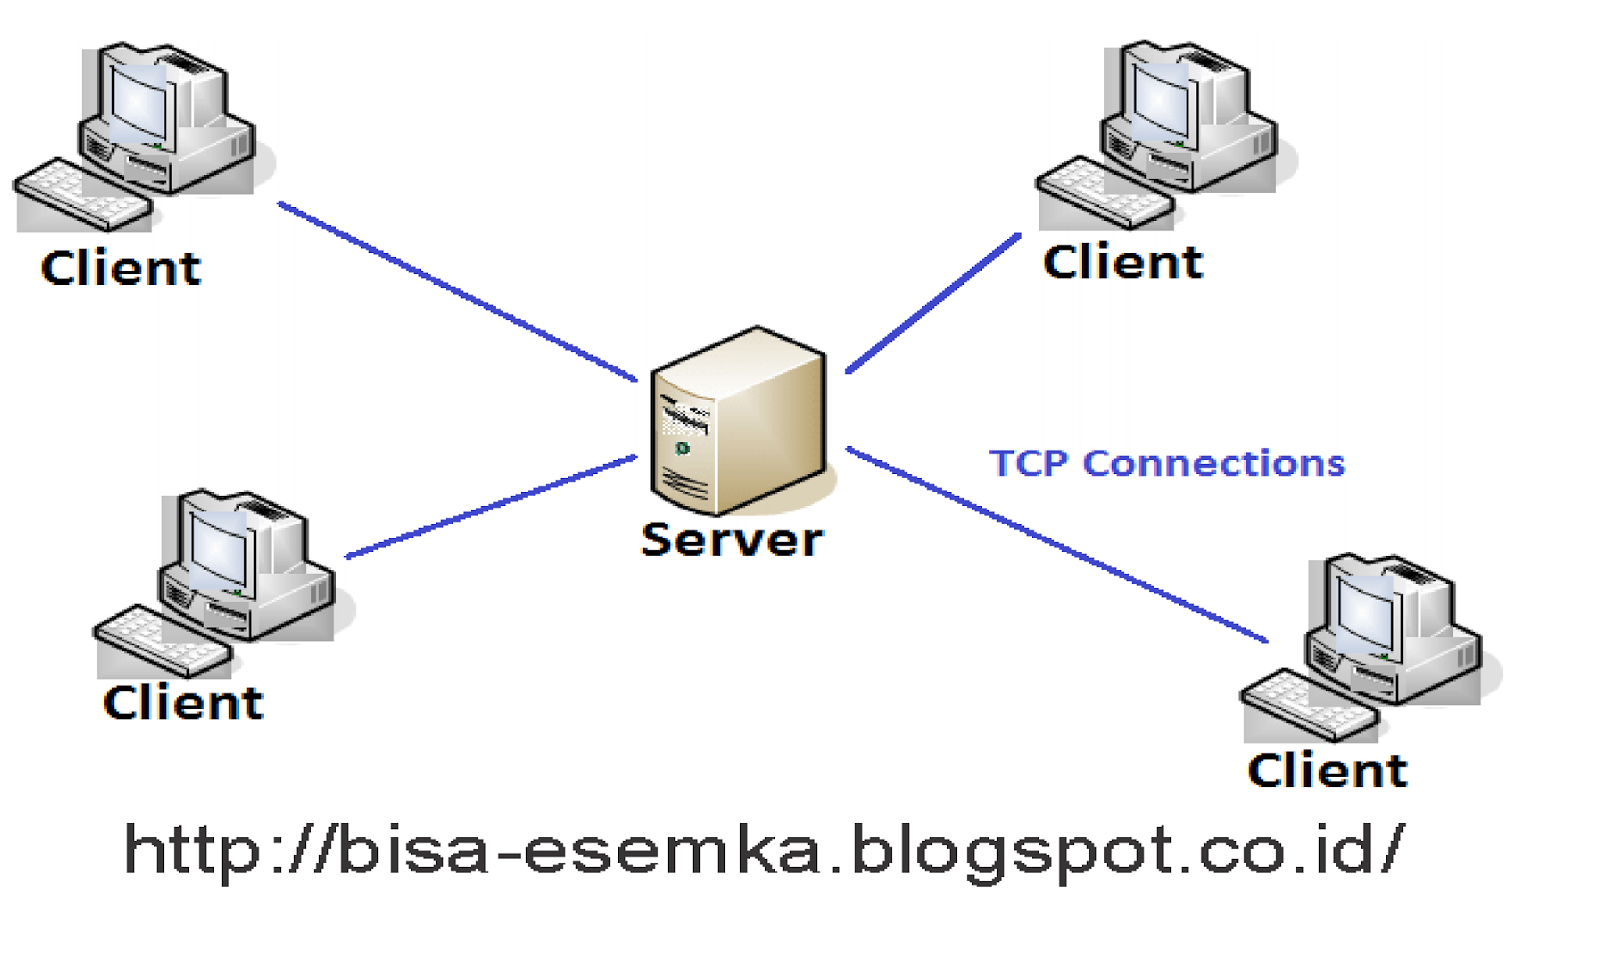 Модель клиент сервер. Модели архитектуры клиент-сервер. TCP архитектура клиент сервер. Схема клиент-серверной архитектуры. Технология клиент-сервер.